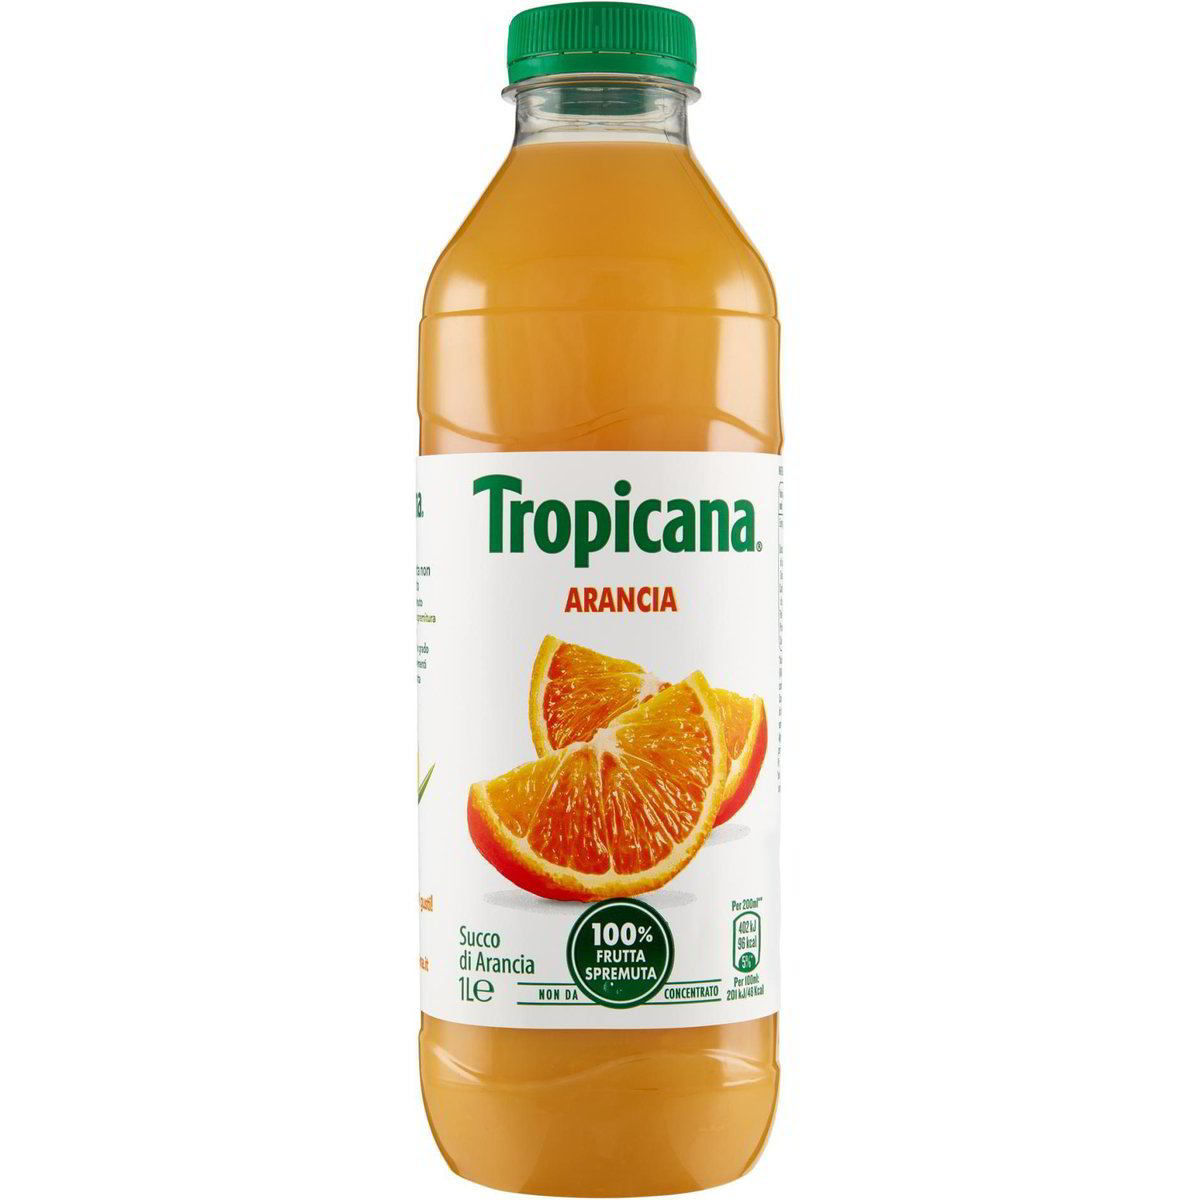 Polz 100% Succo d'arancia 1 Lt - Drogheria Olimpia Shop Online